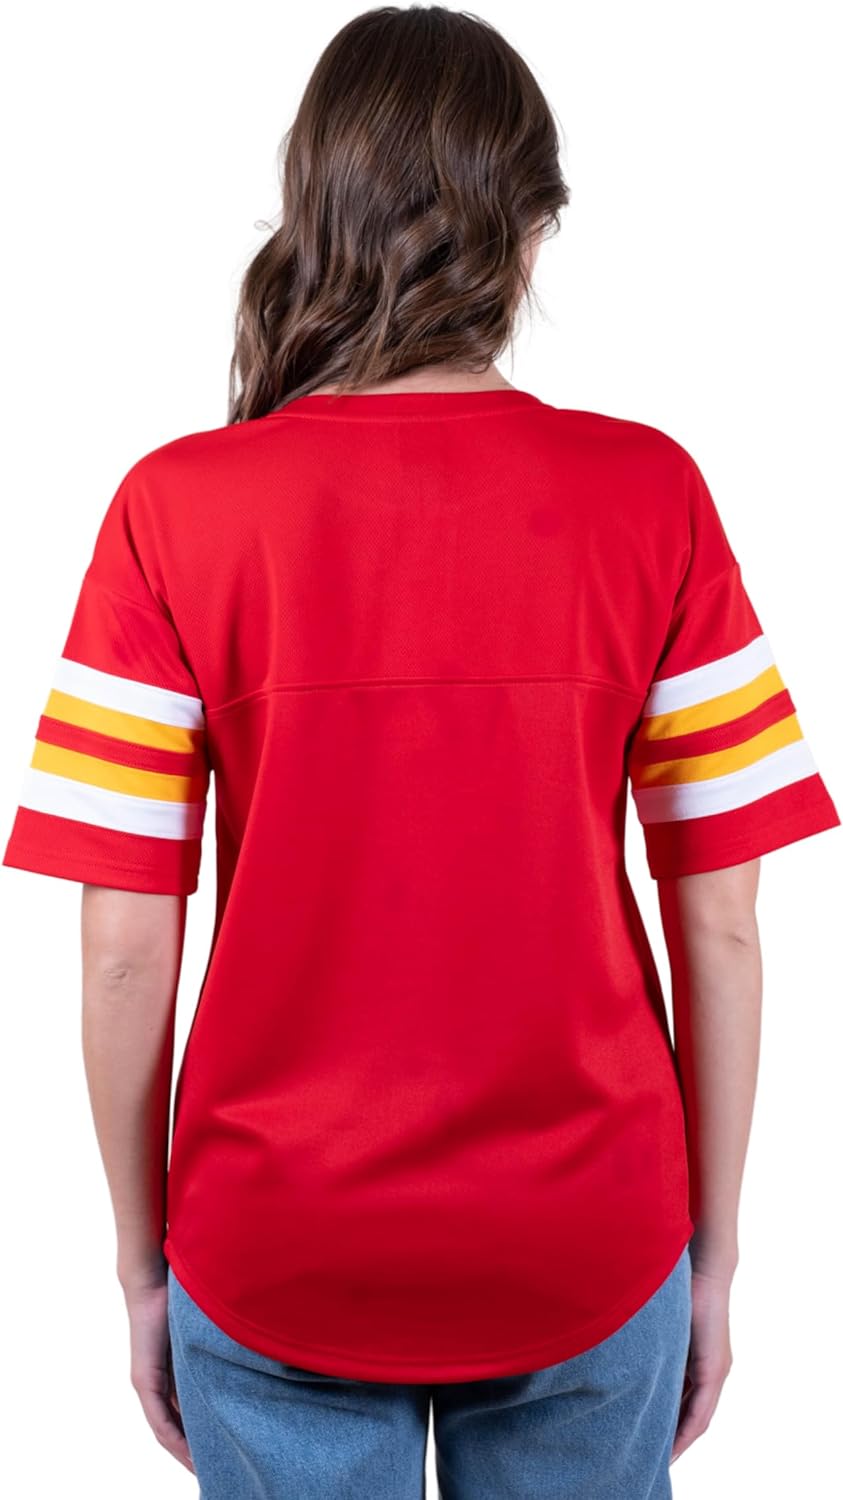 Ultra Game NFL Kansas City Chiefs Womens Standard Lace Up Tee Shirt Penalty Box|Kansas City Chiefs